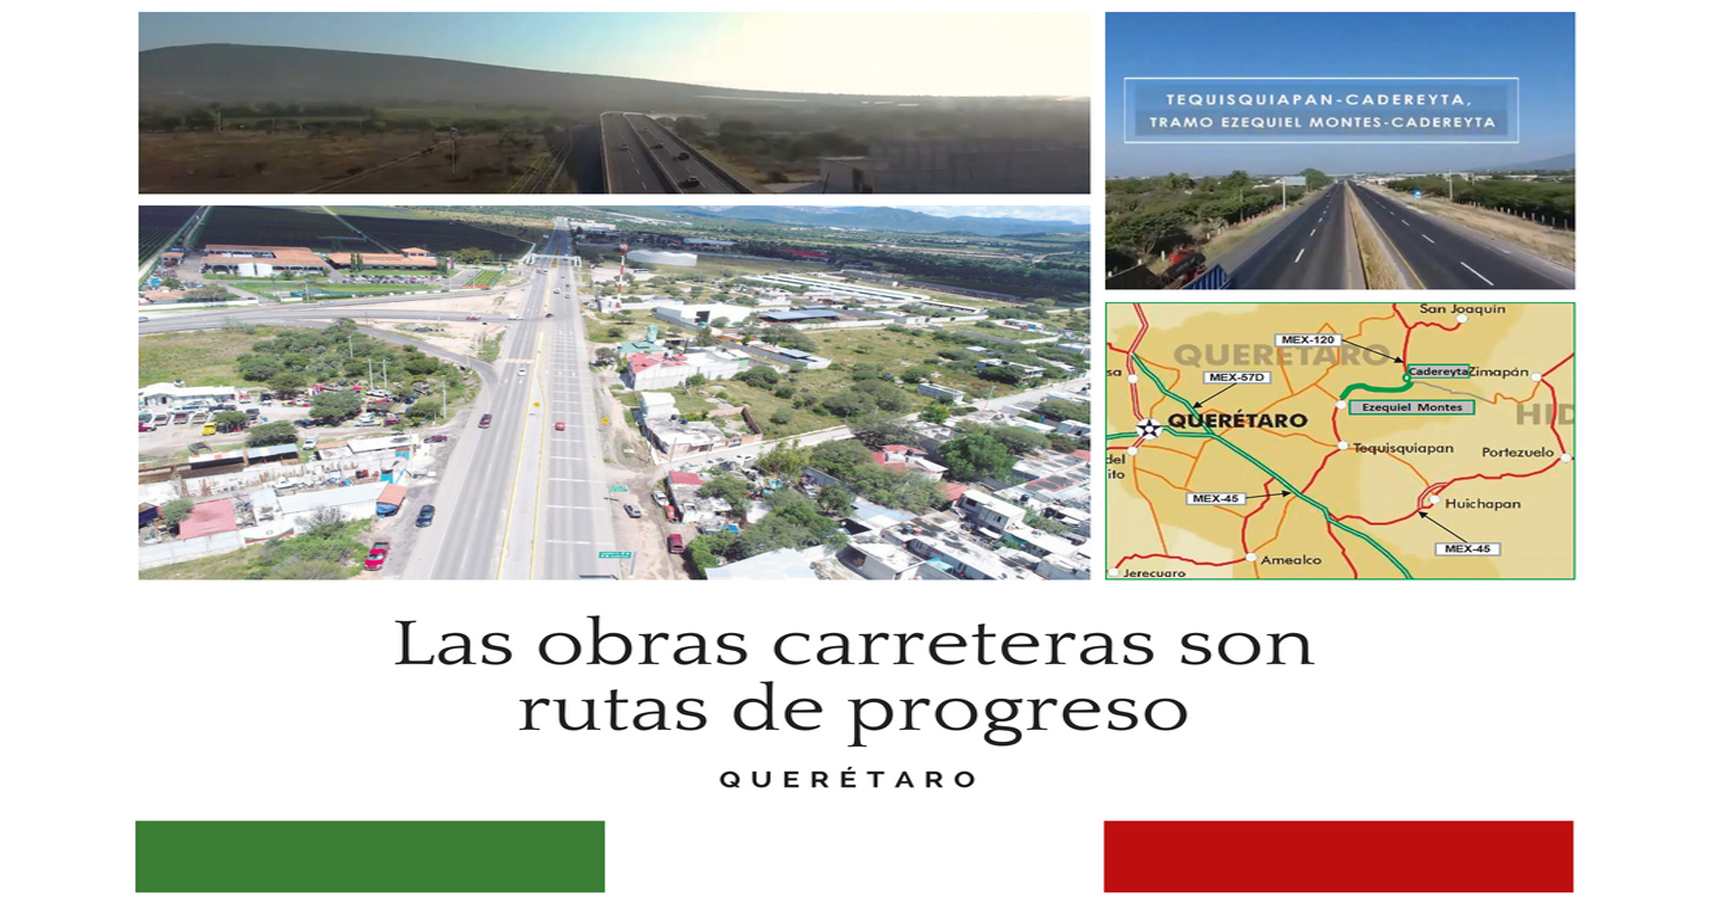 Inauguración de la ampliación y modernización del tramo Ezequiel Montes-Cadereyta de la carretera Tequisquiapan-Cadereyta